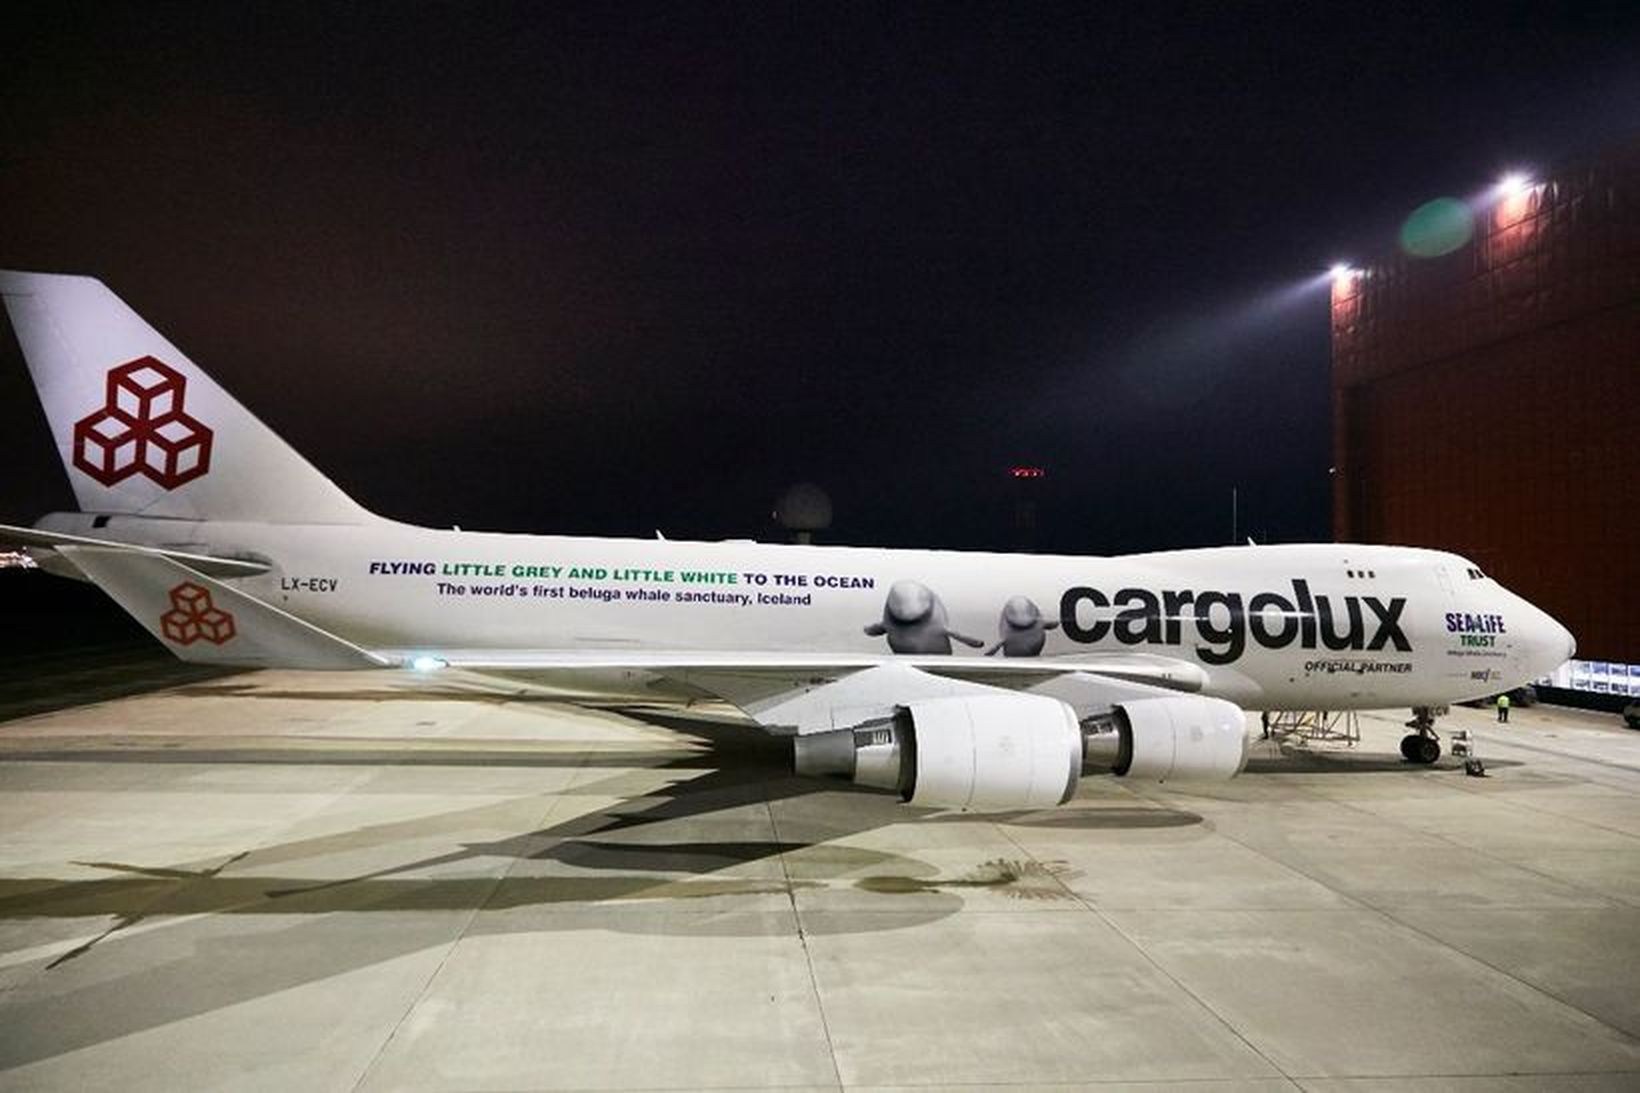 Flugvél Cargolux sem mun flytja hvalina til Íslands.